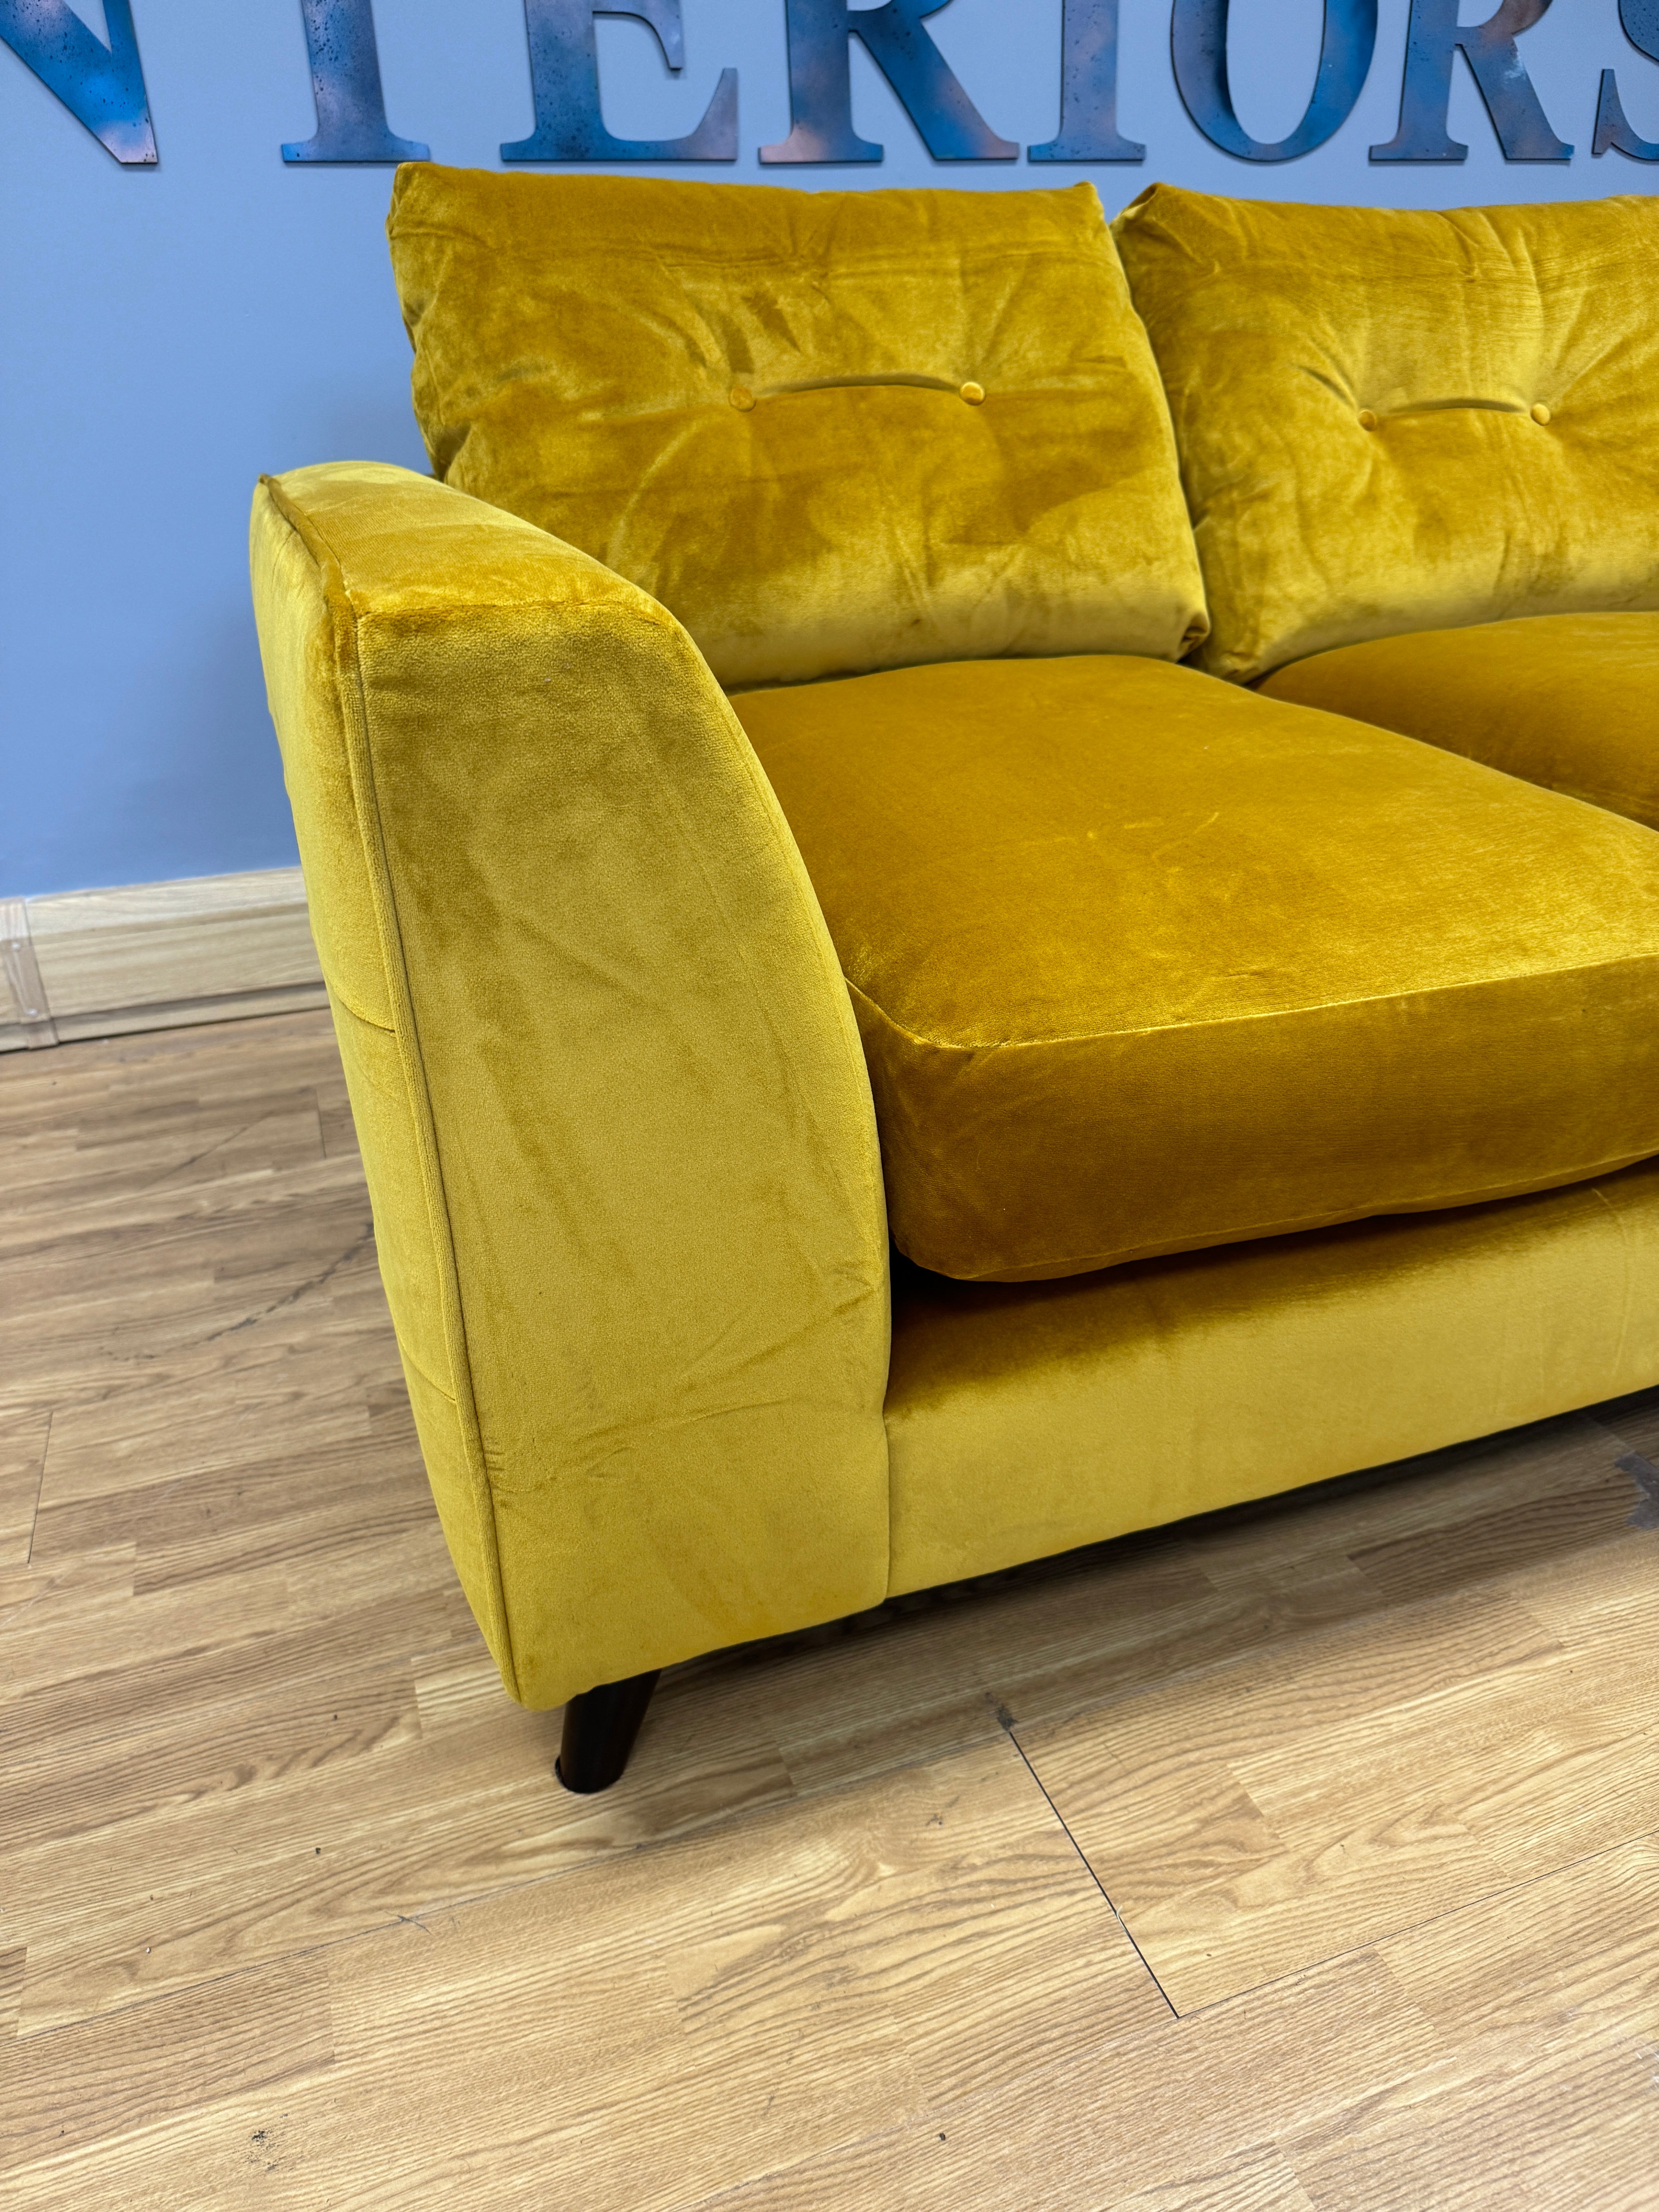 GRAND DESIGNS FARNHAM 2 seater standard back sofa in mustard velvet fabric